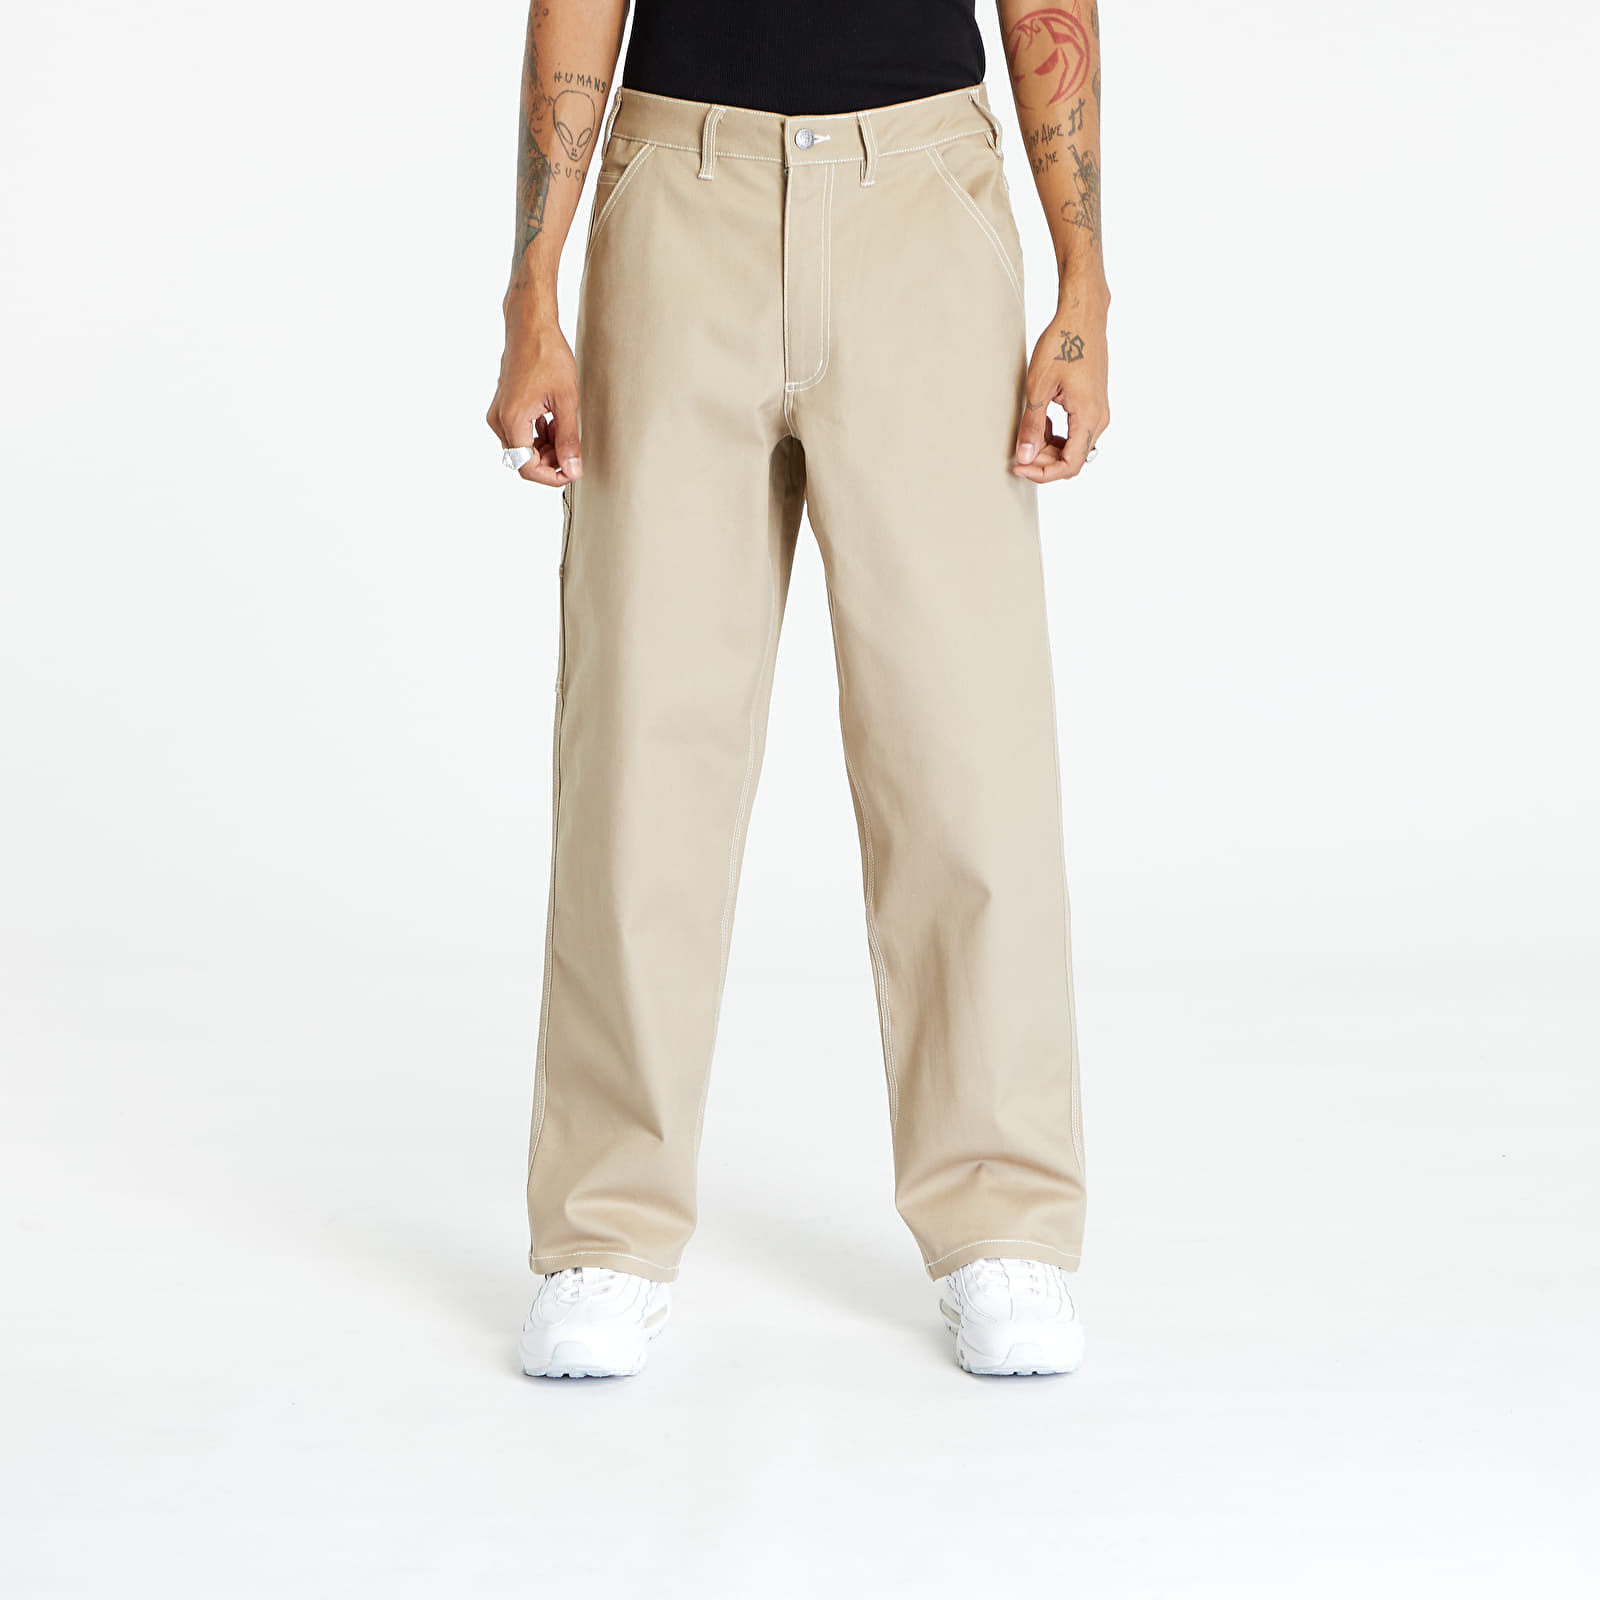 Nike Life Men\'s Carpenter Pants Khaki/ Khaki